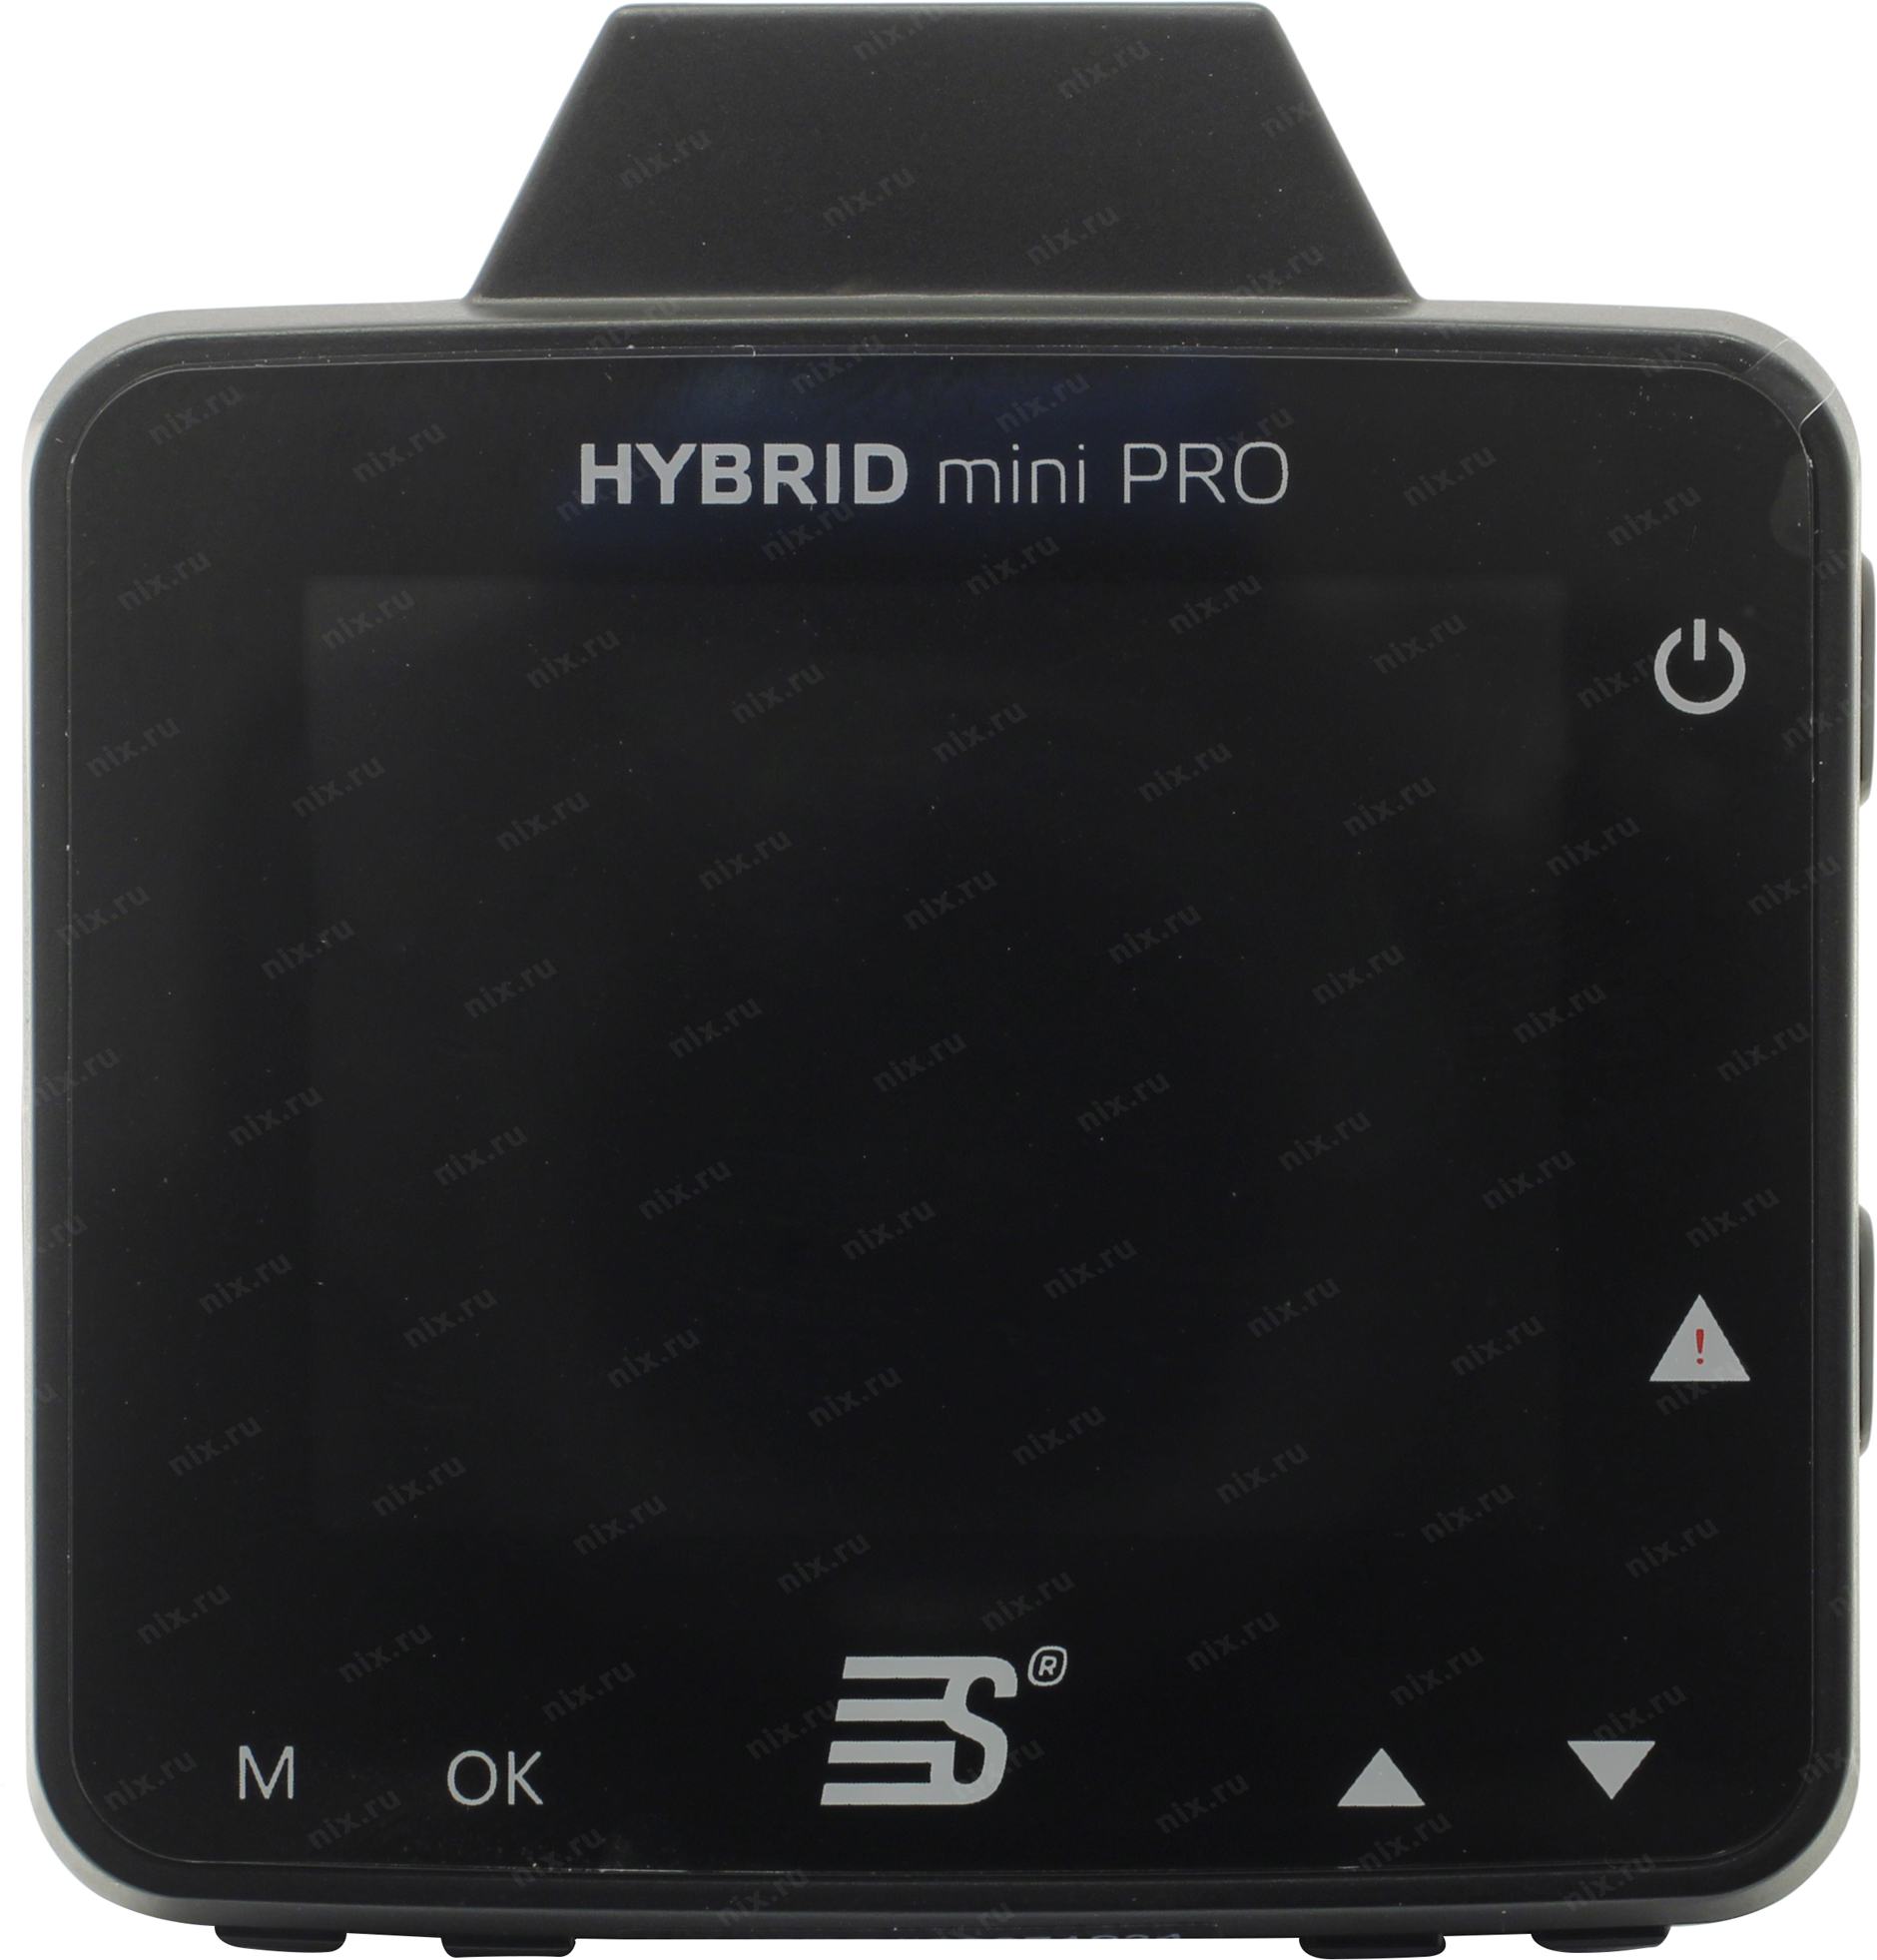 Hybrid mini pro